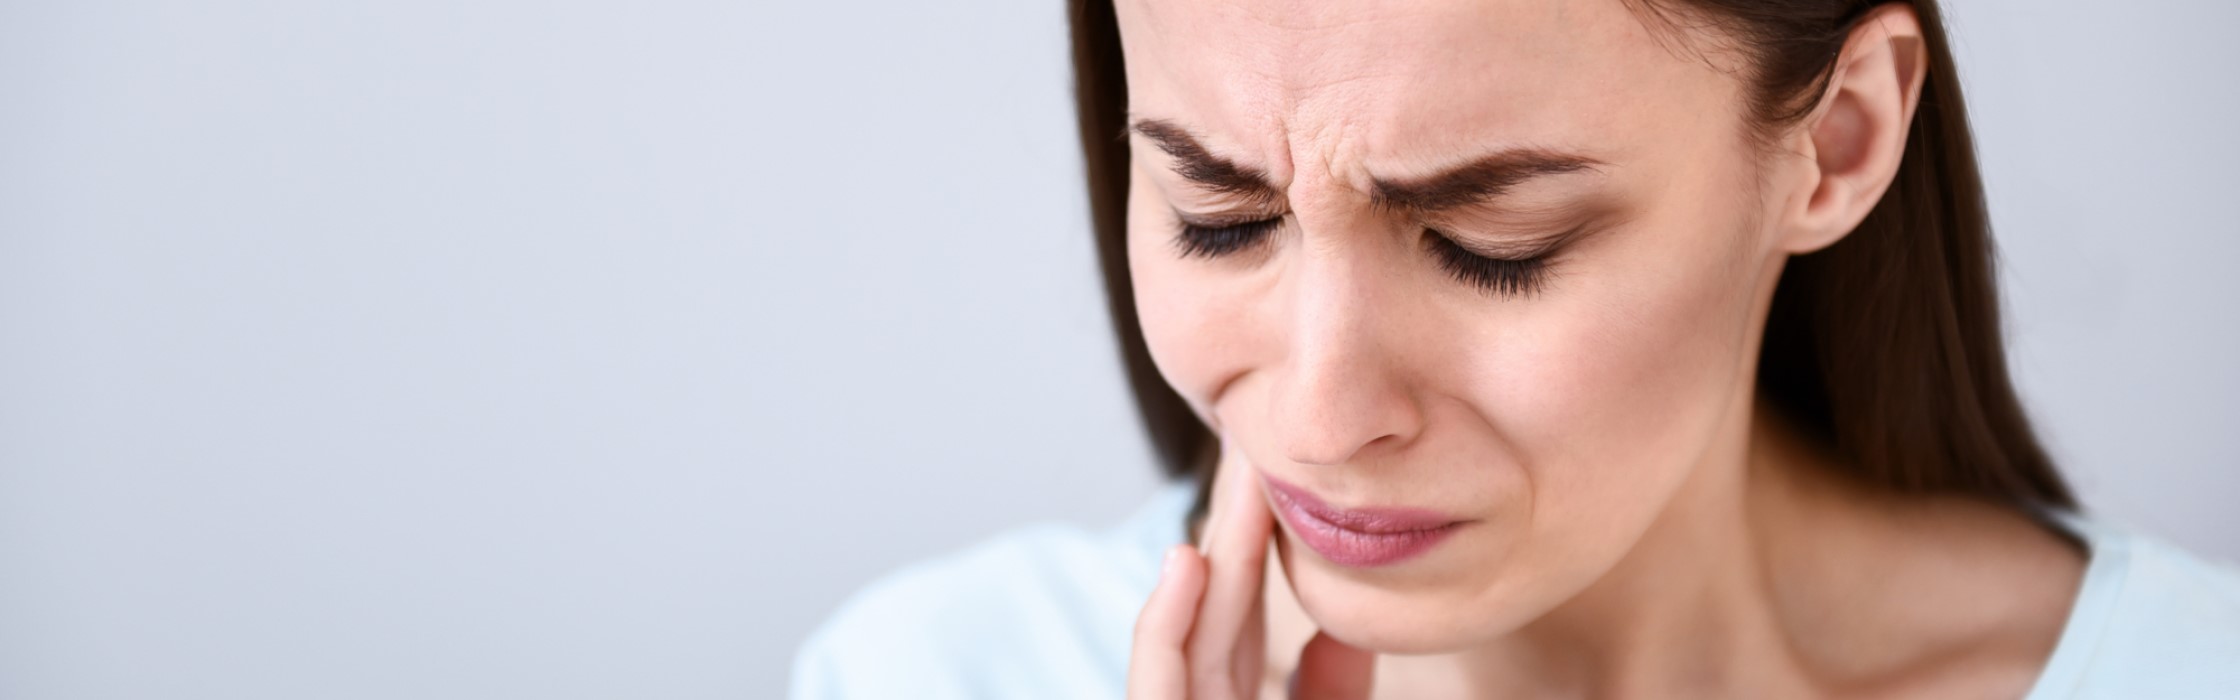 Mundschleimhautentzündung: Ursachen und Behandlung